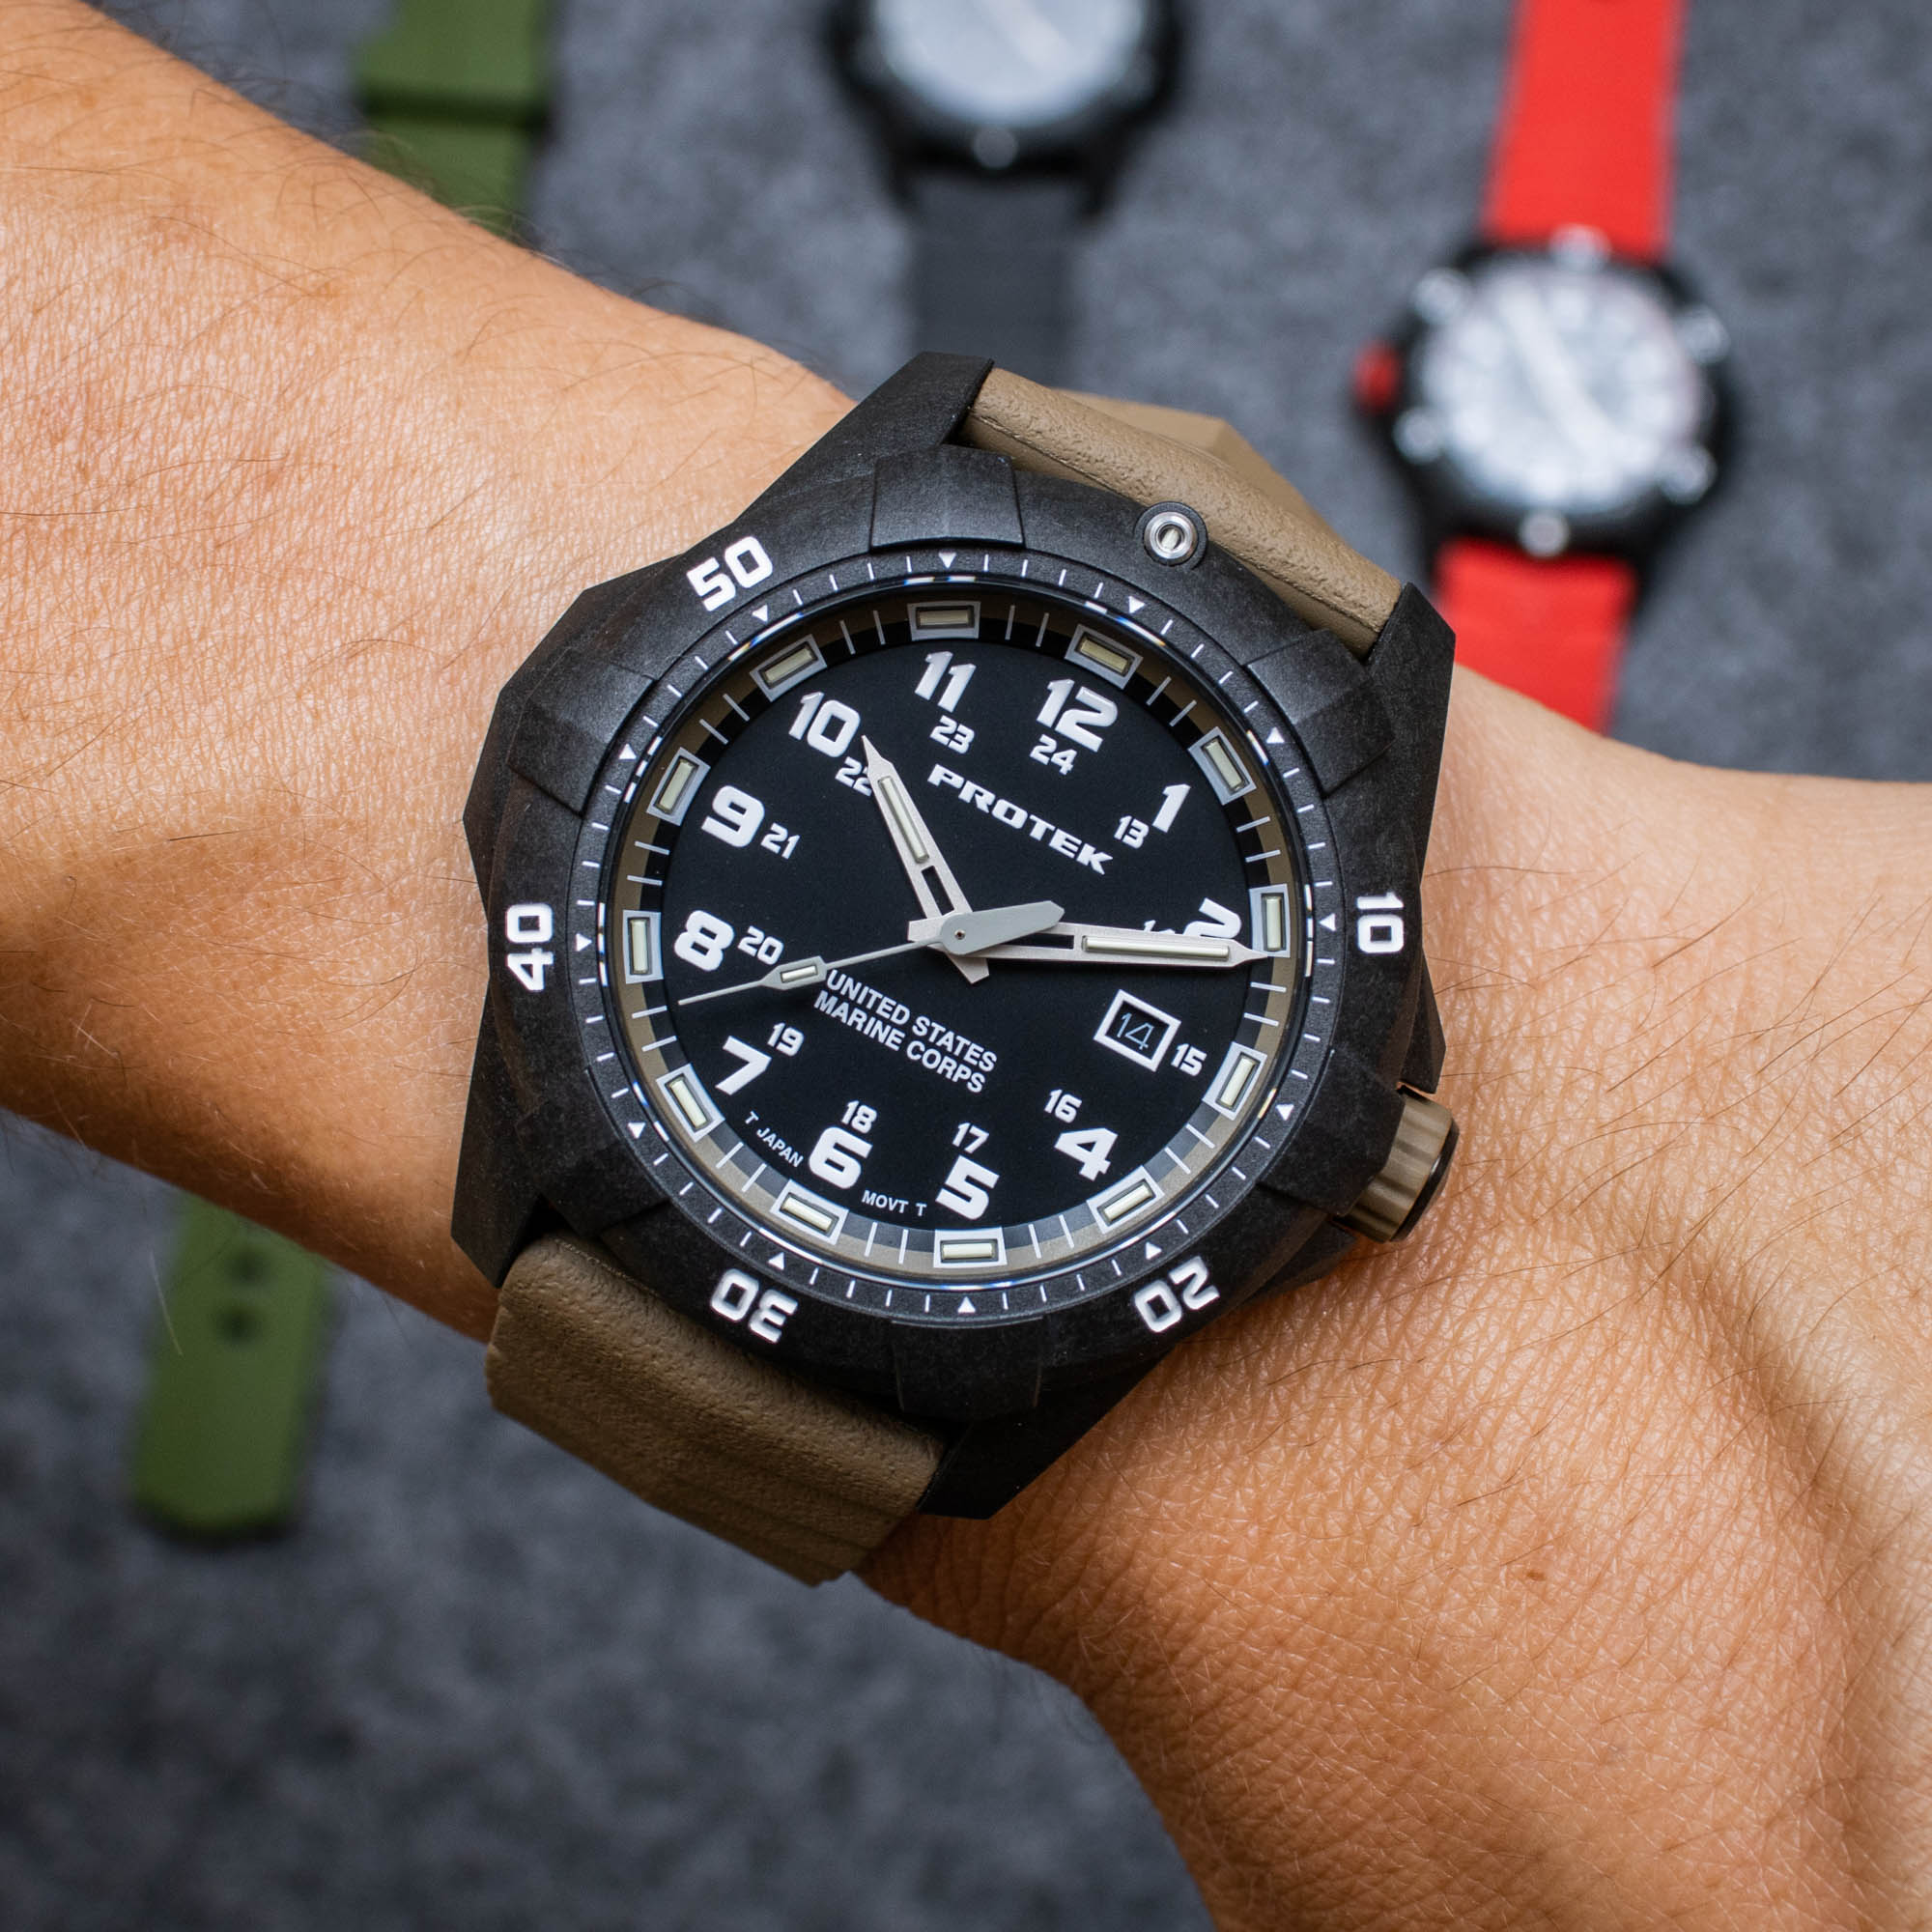 Обзор доступных часов ProTek Series 1010 Dive Watch